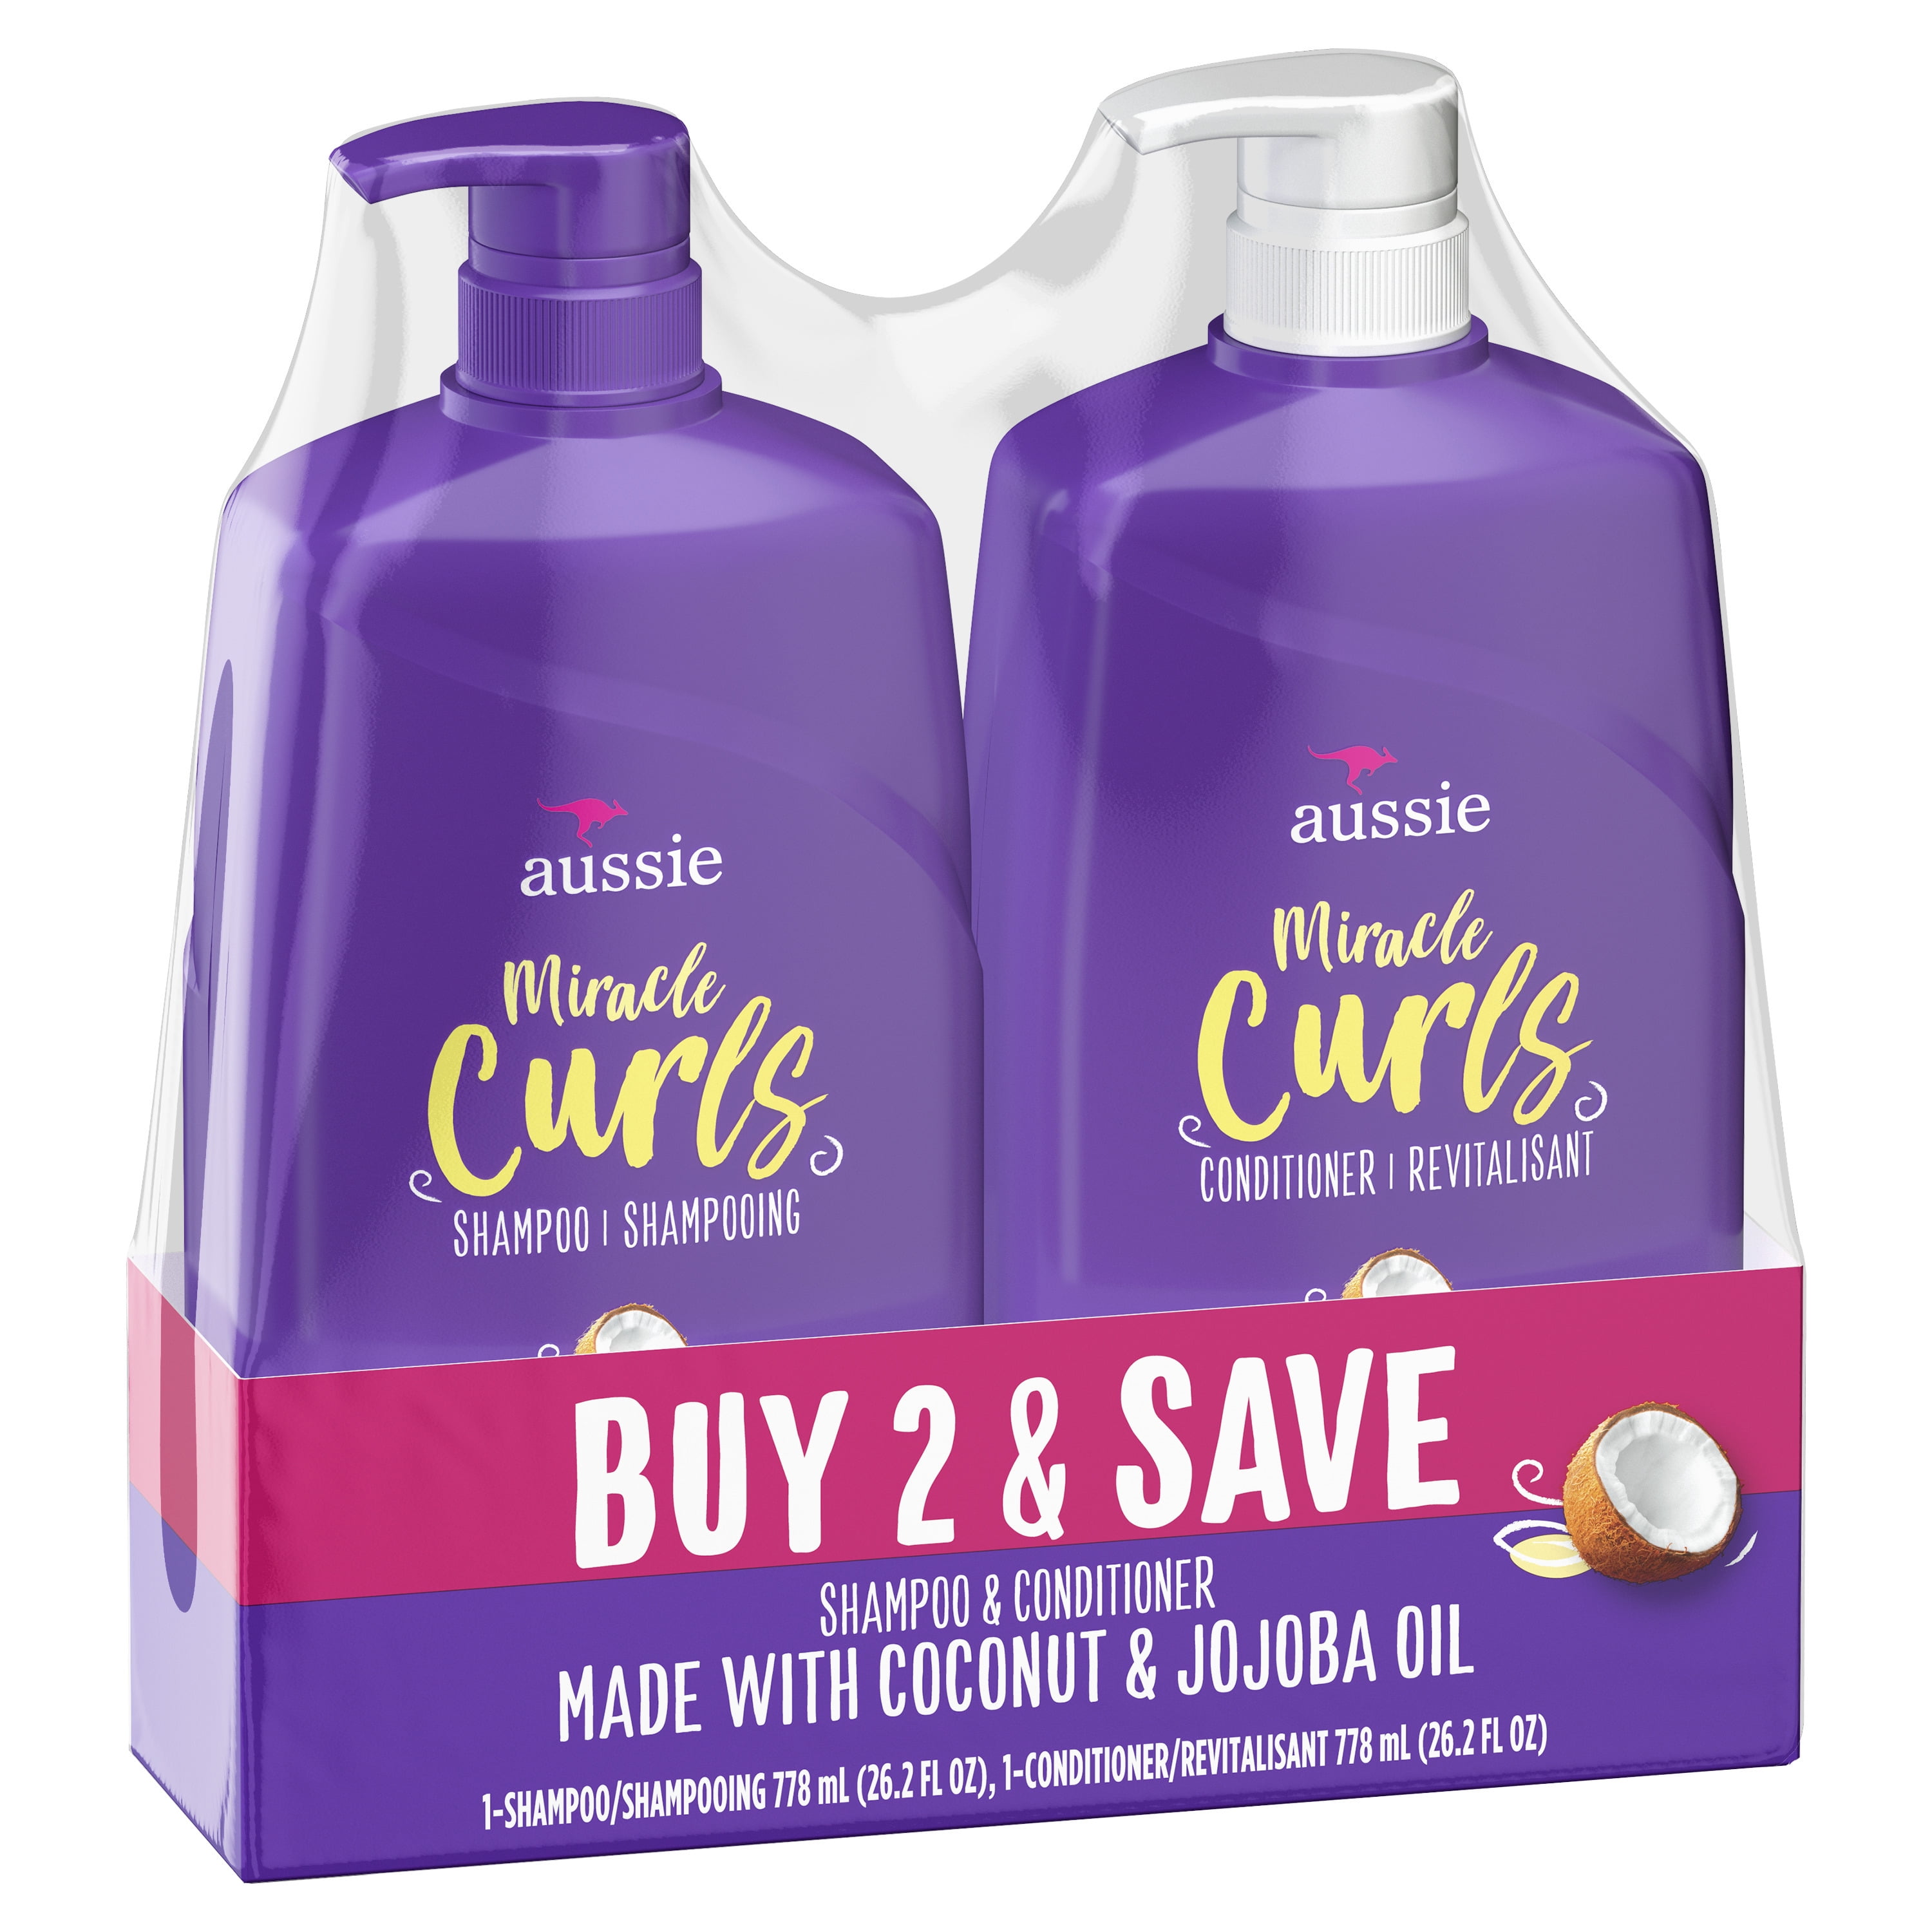 Aussie Shampoo Conditioner Dual 26.2 oz Walmart.com